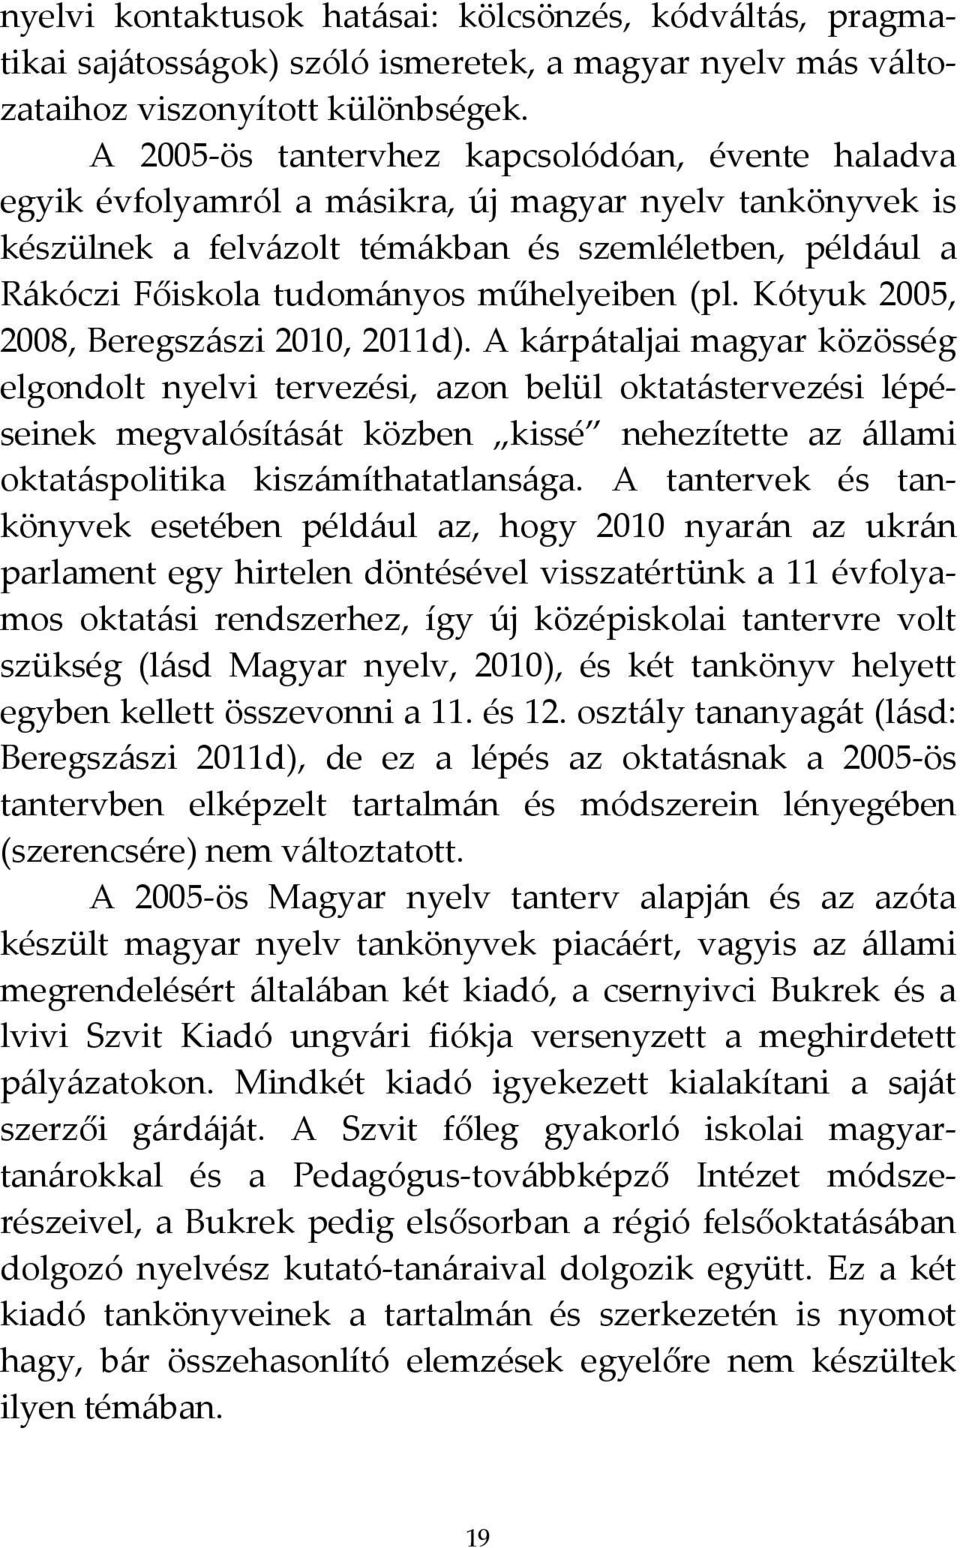 műhelyeiben (pl. Kótyuk 2005, 2008, Beregszászi 2010, 2011d).